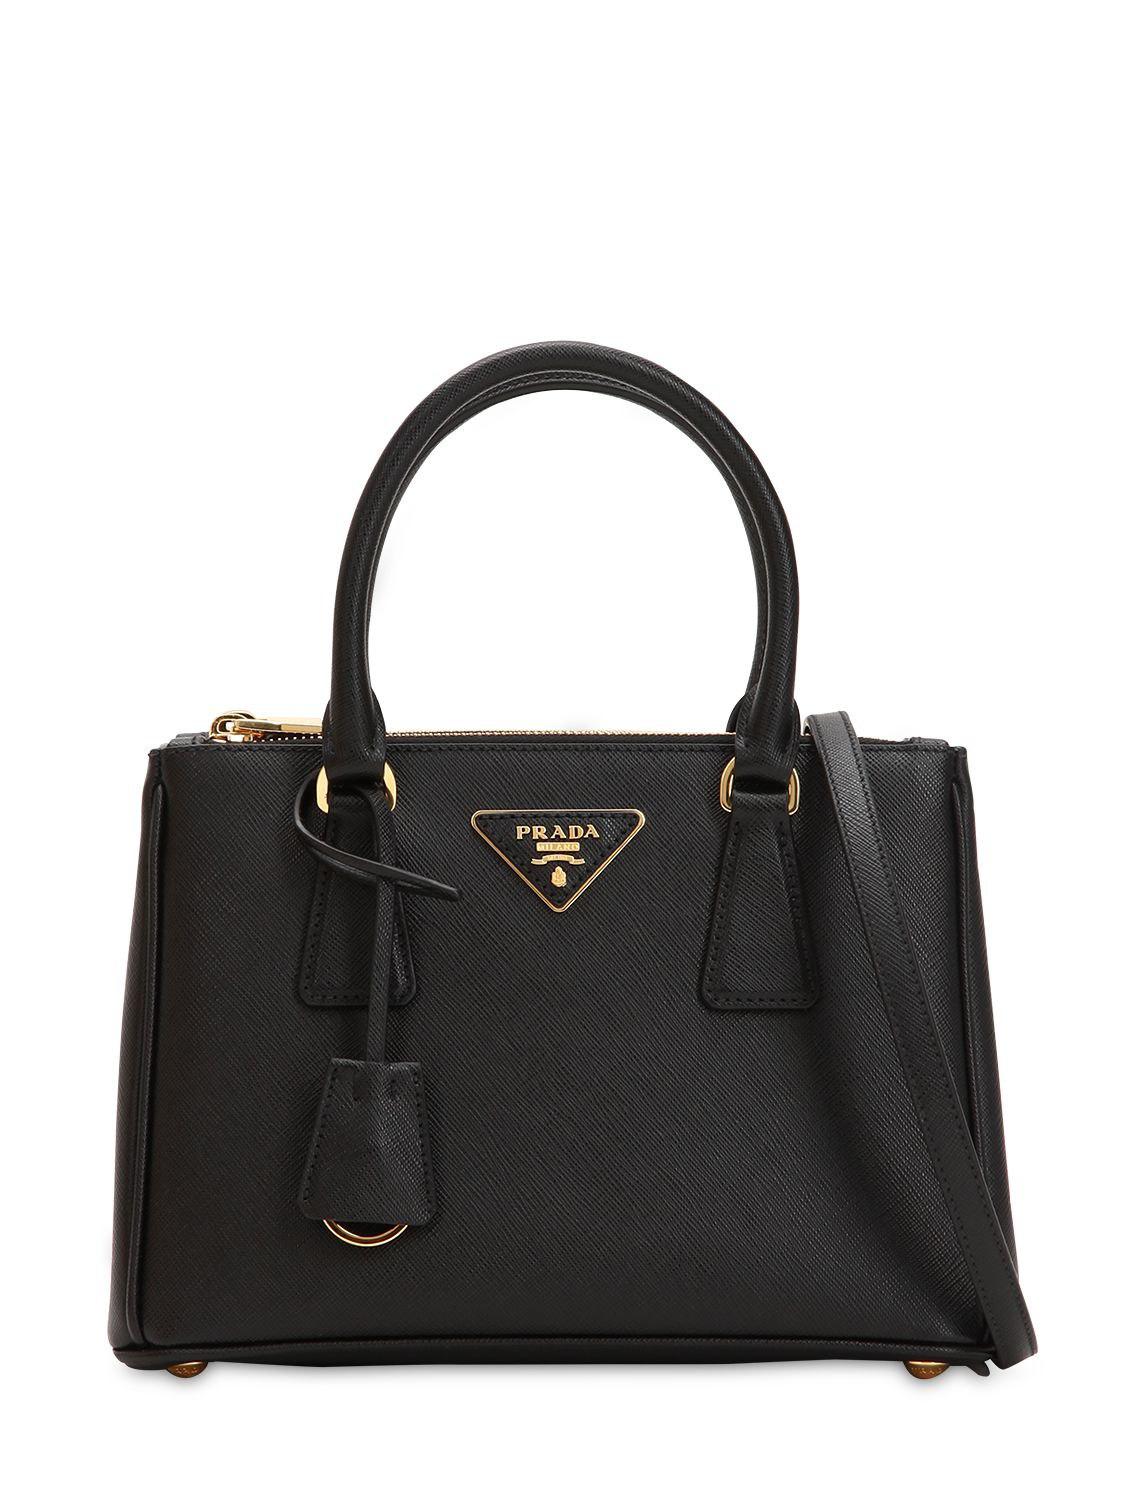 Prada Galleria Tote Bag Medium Nero in Black | Lyst